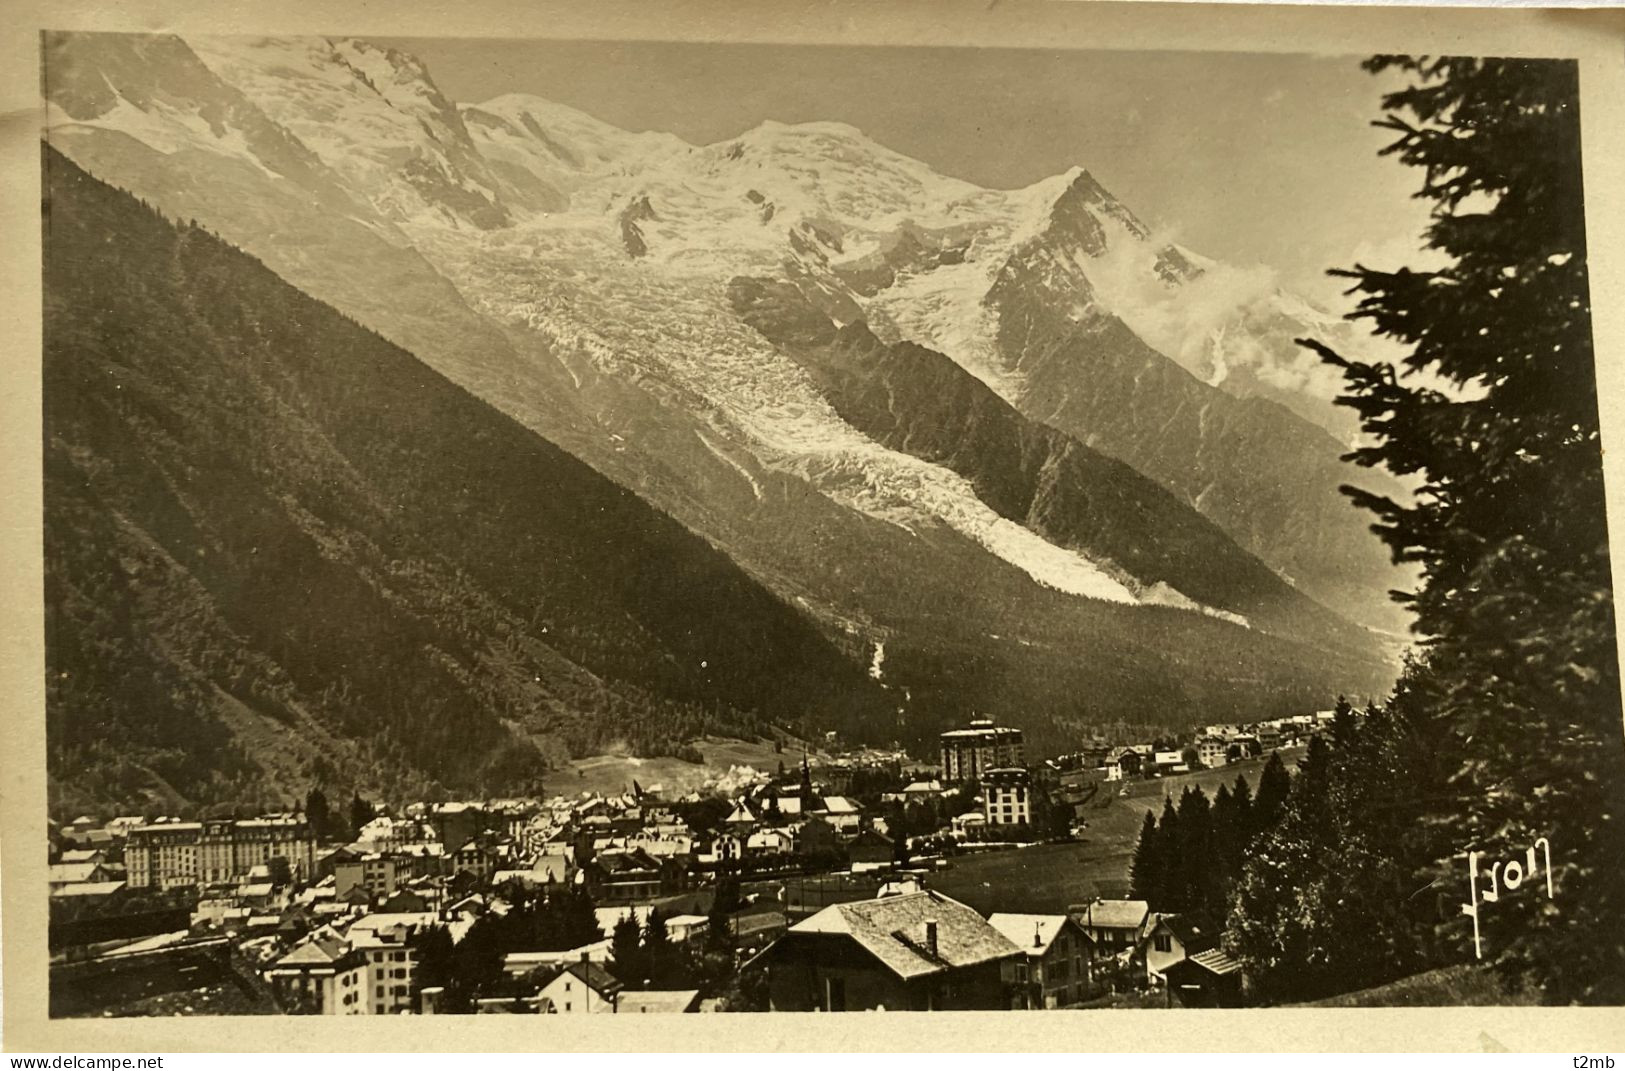 CPSM (Haute Savoie). CHAMONIX, Vue Générale Et Massif Du Mont-Blanc - Chamonix-Mont-Blanc